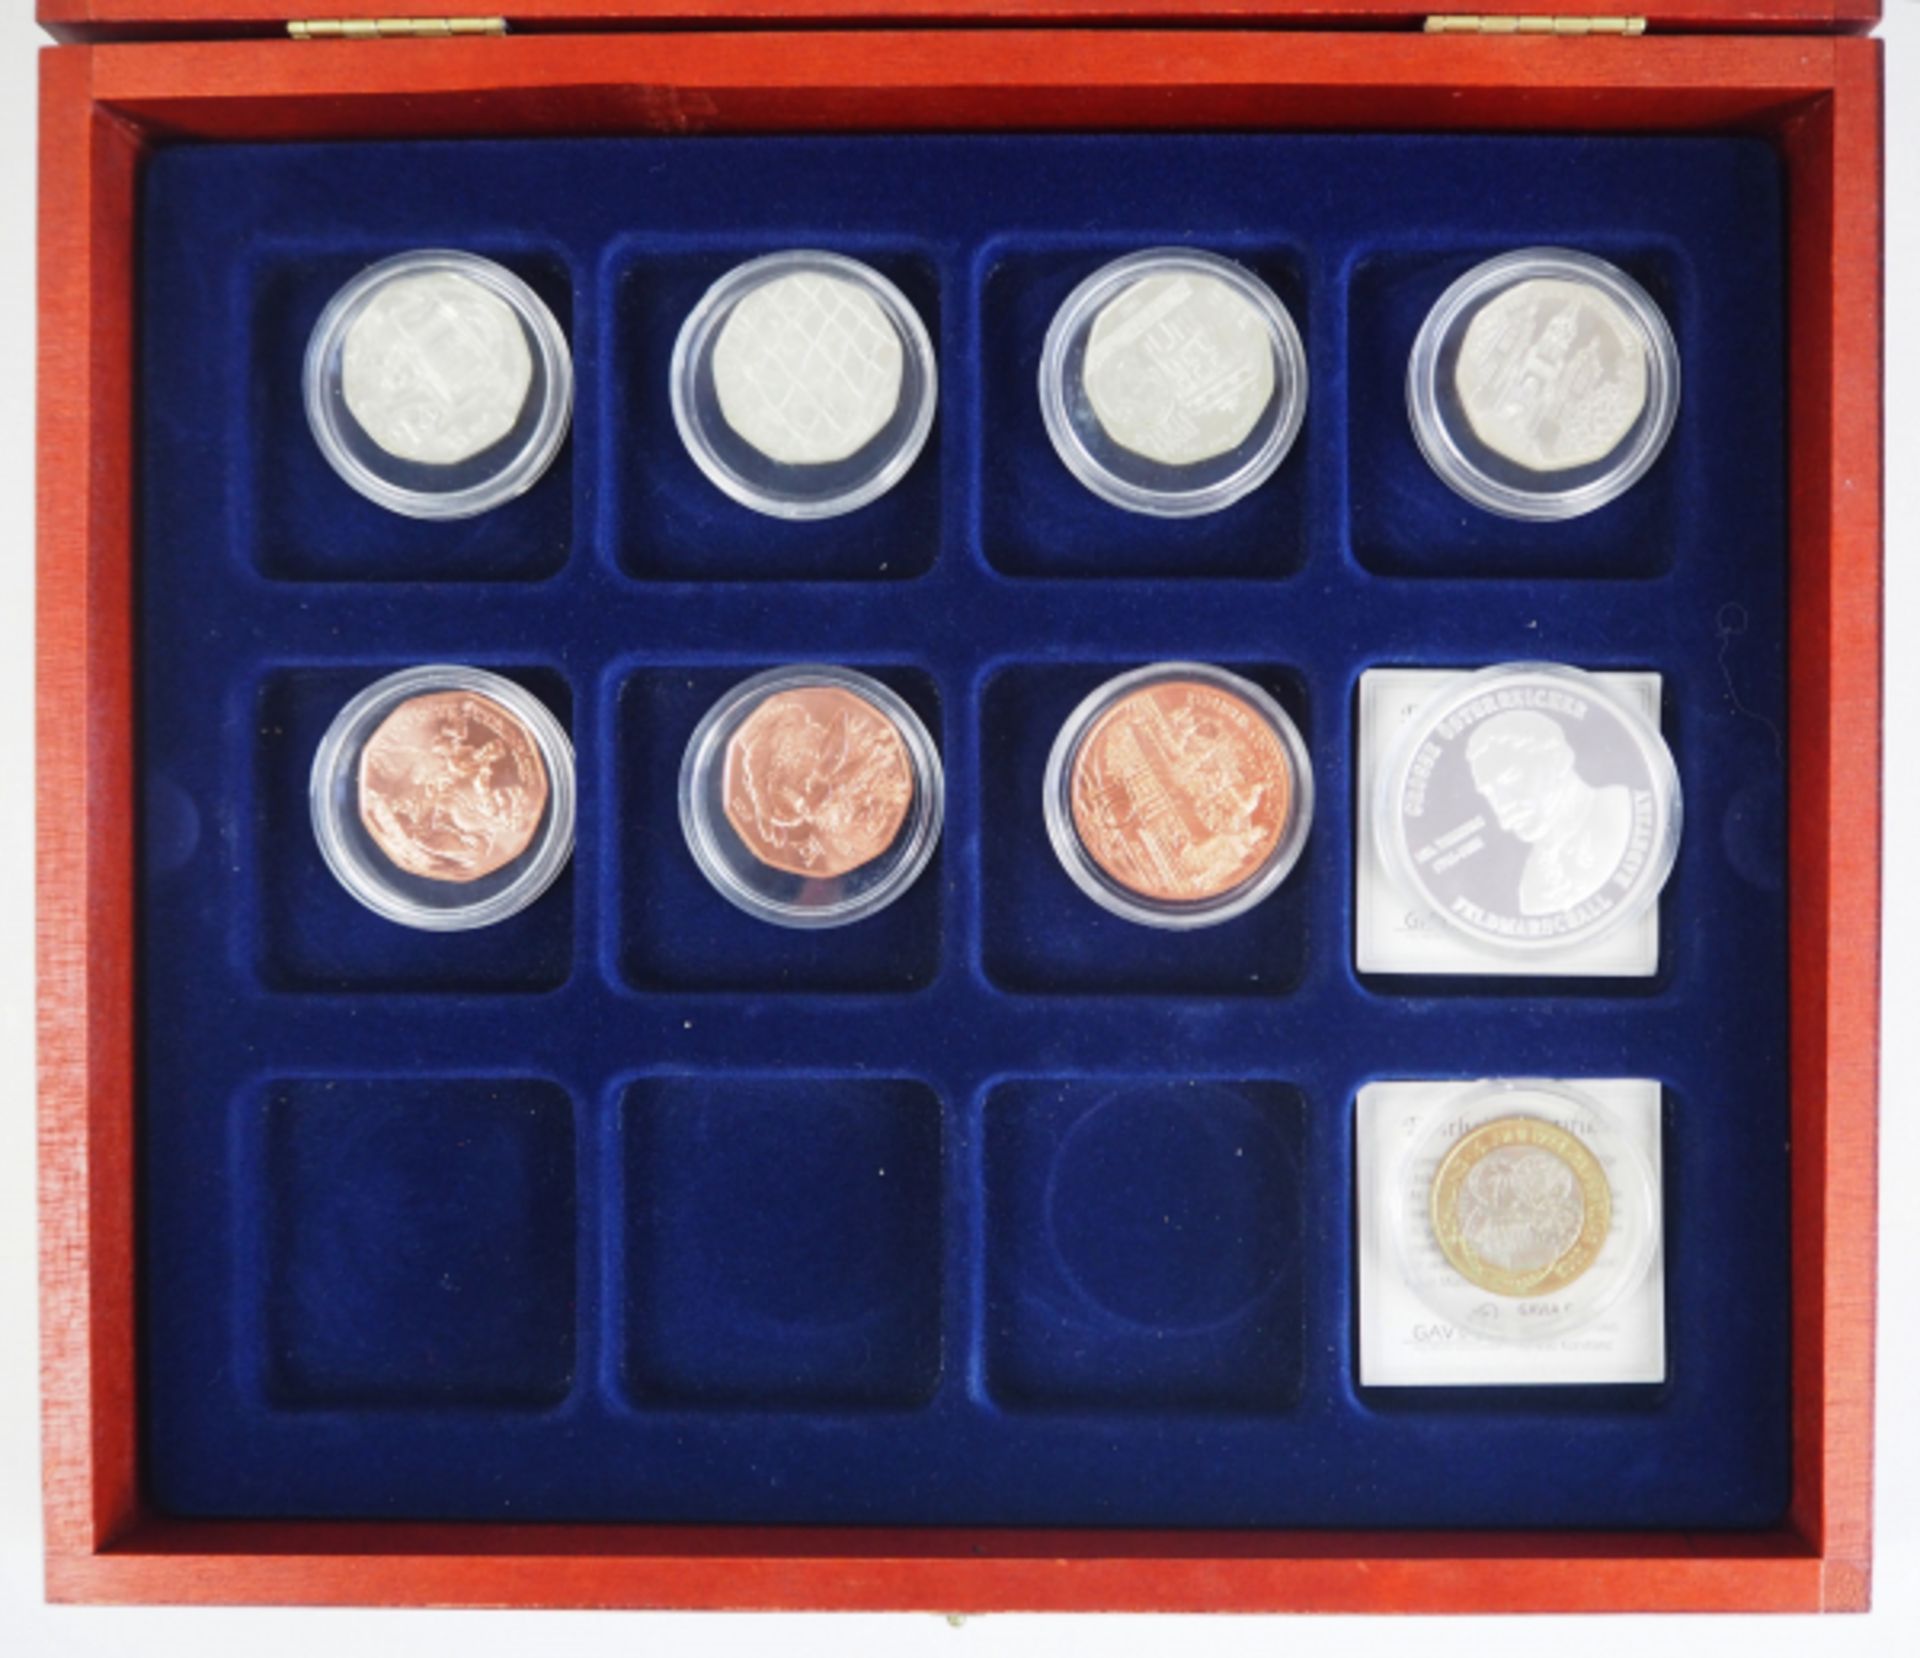 Österreich: Sammlung Silber Euro Münzen. Diverse, u.a. 10 und 5 Euro. Zumeist gekapselt, im - Image 2 of 3